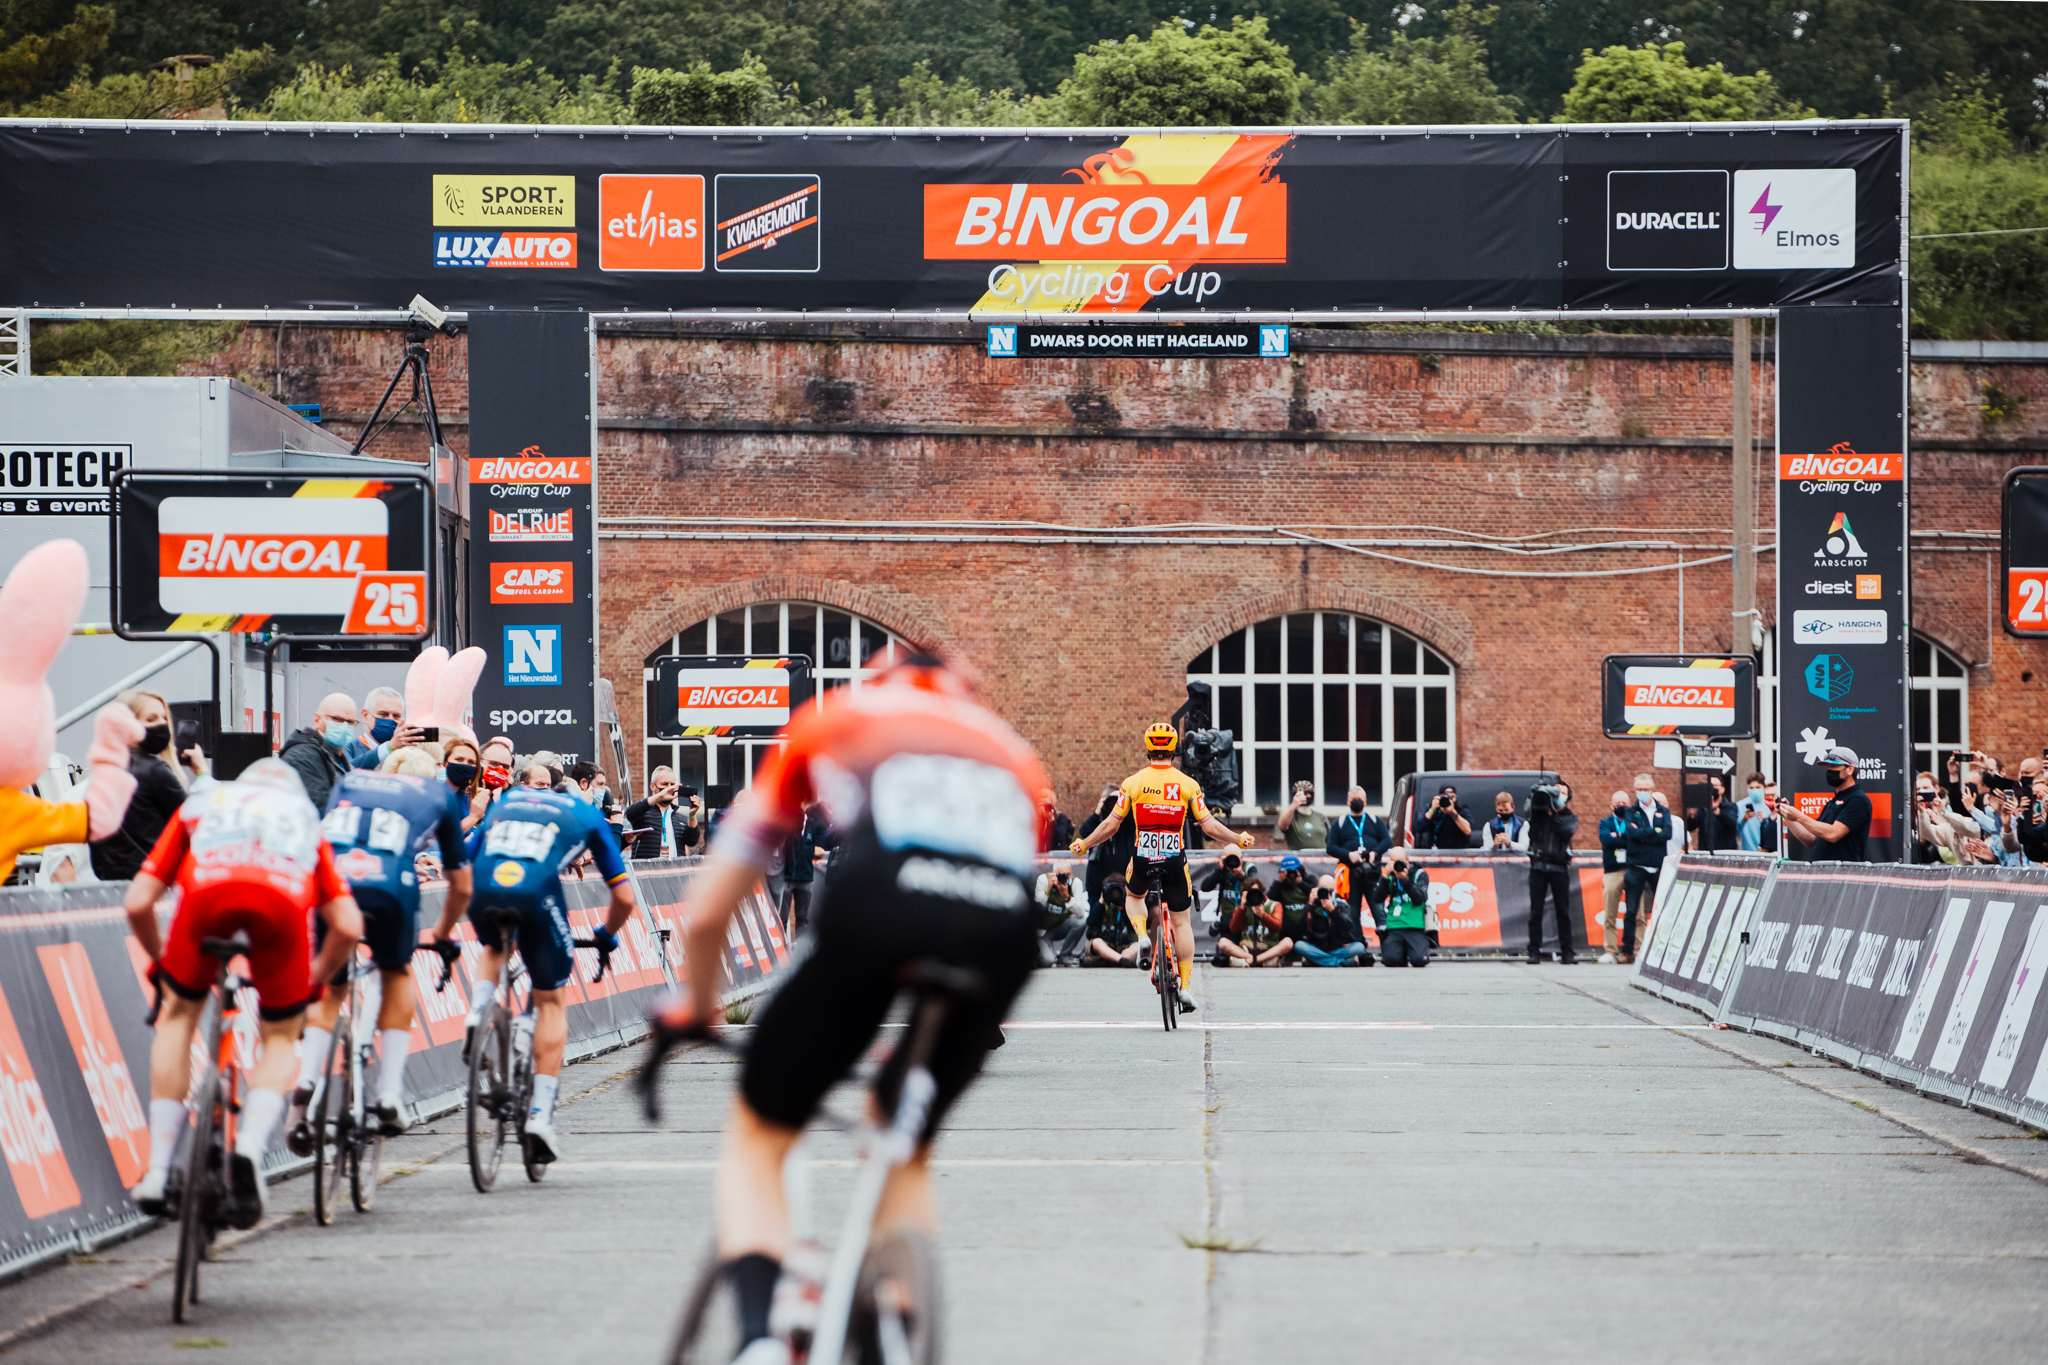 Dwars Door Het Hageland 2021, Bingoal Cycling Cup